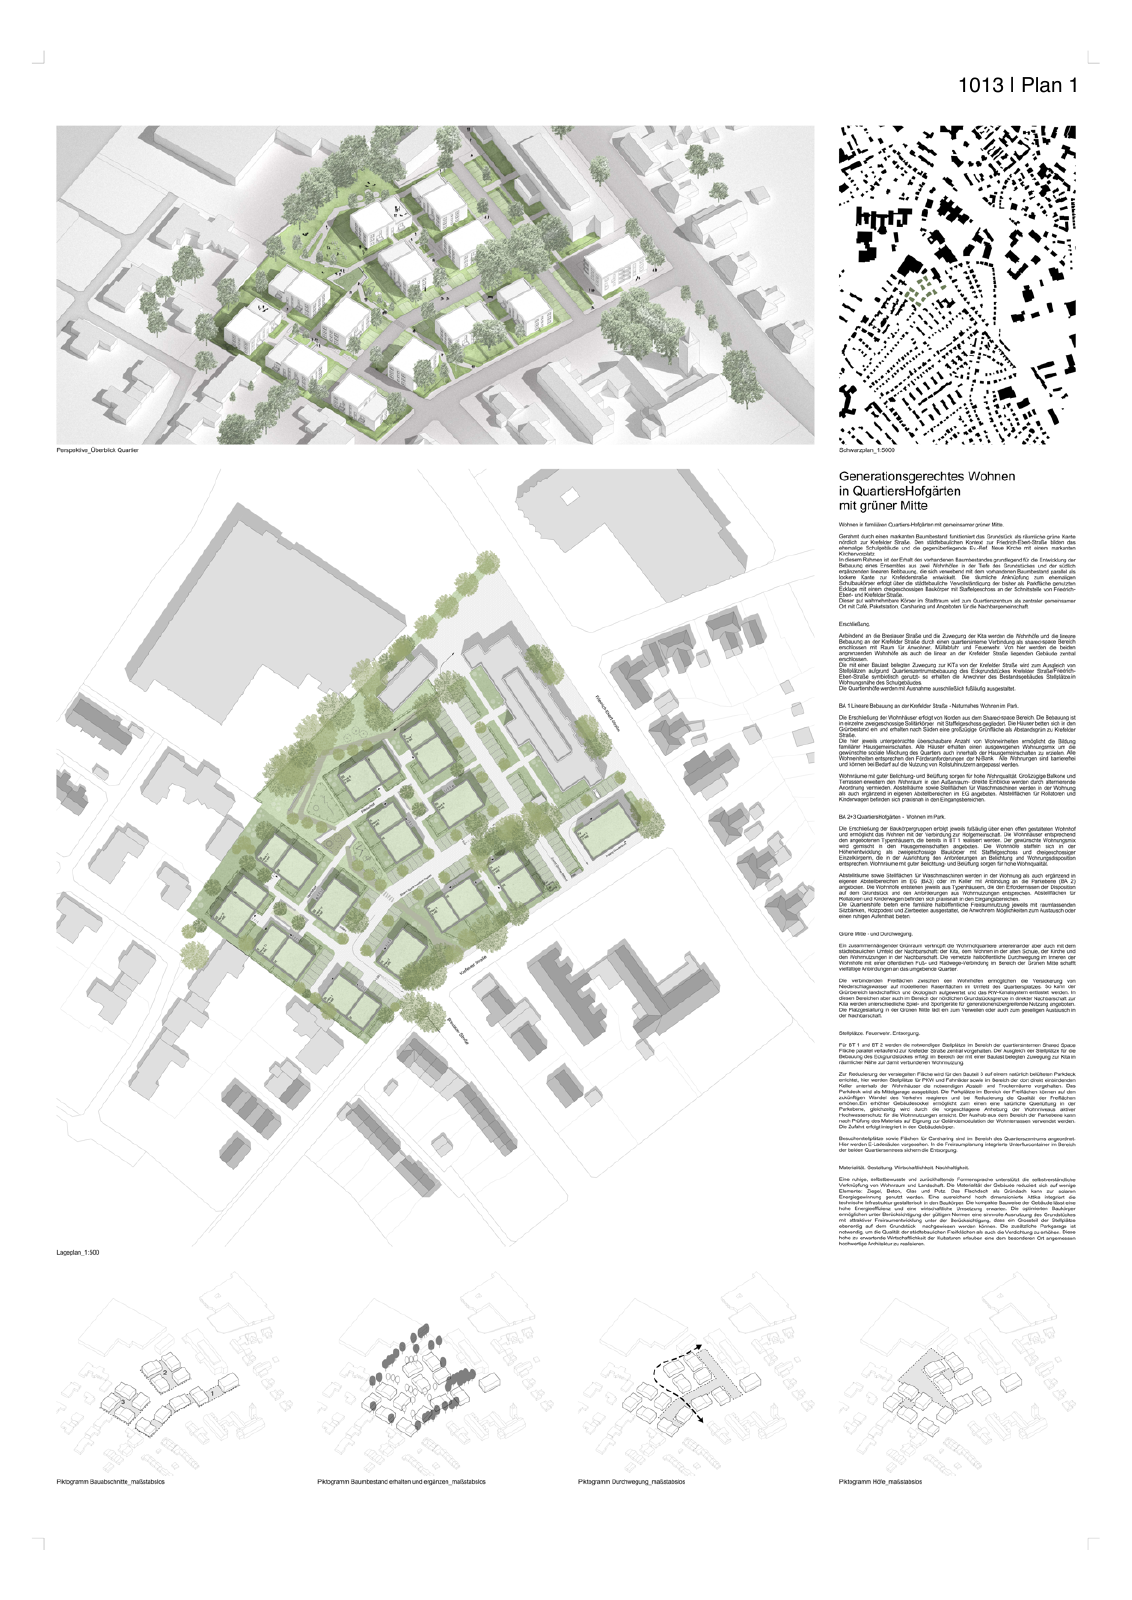 Vorschau Neubau von 100 Wohneinheiten [Nordhorn] Seite 76